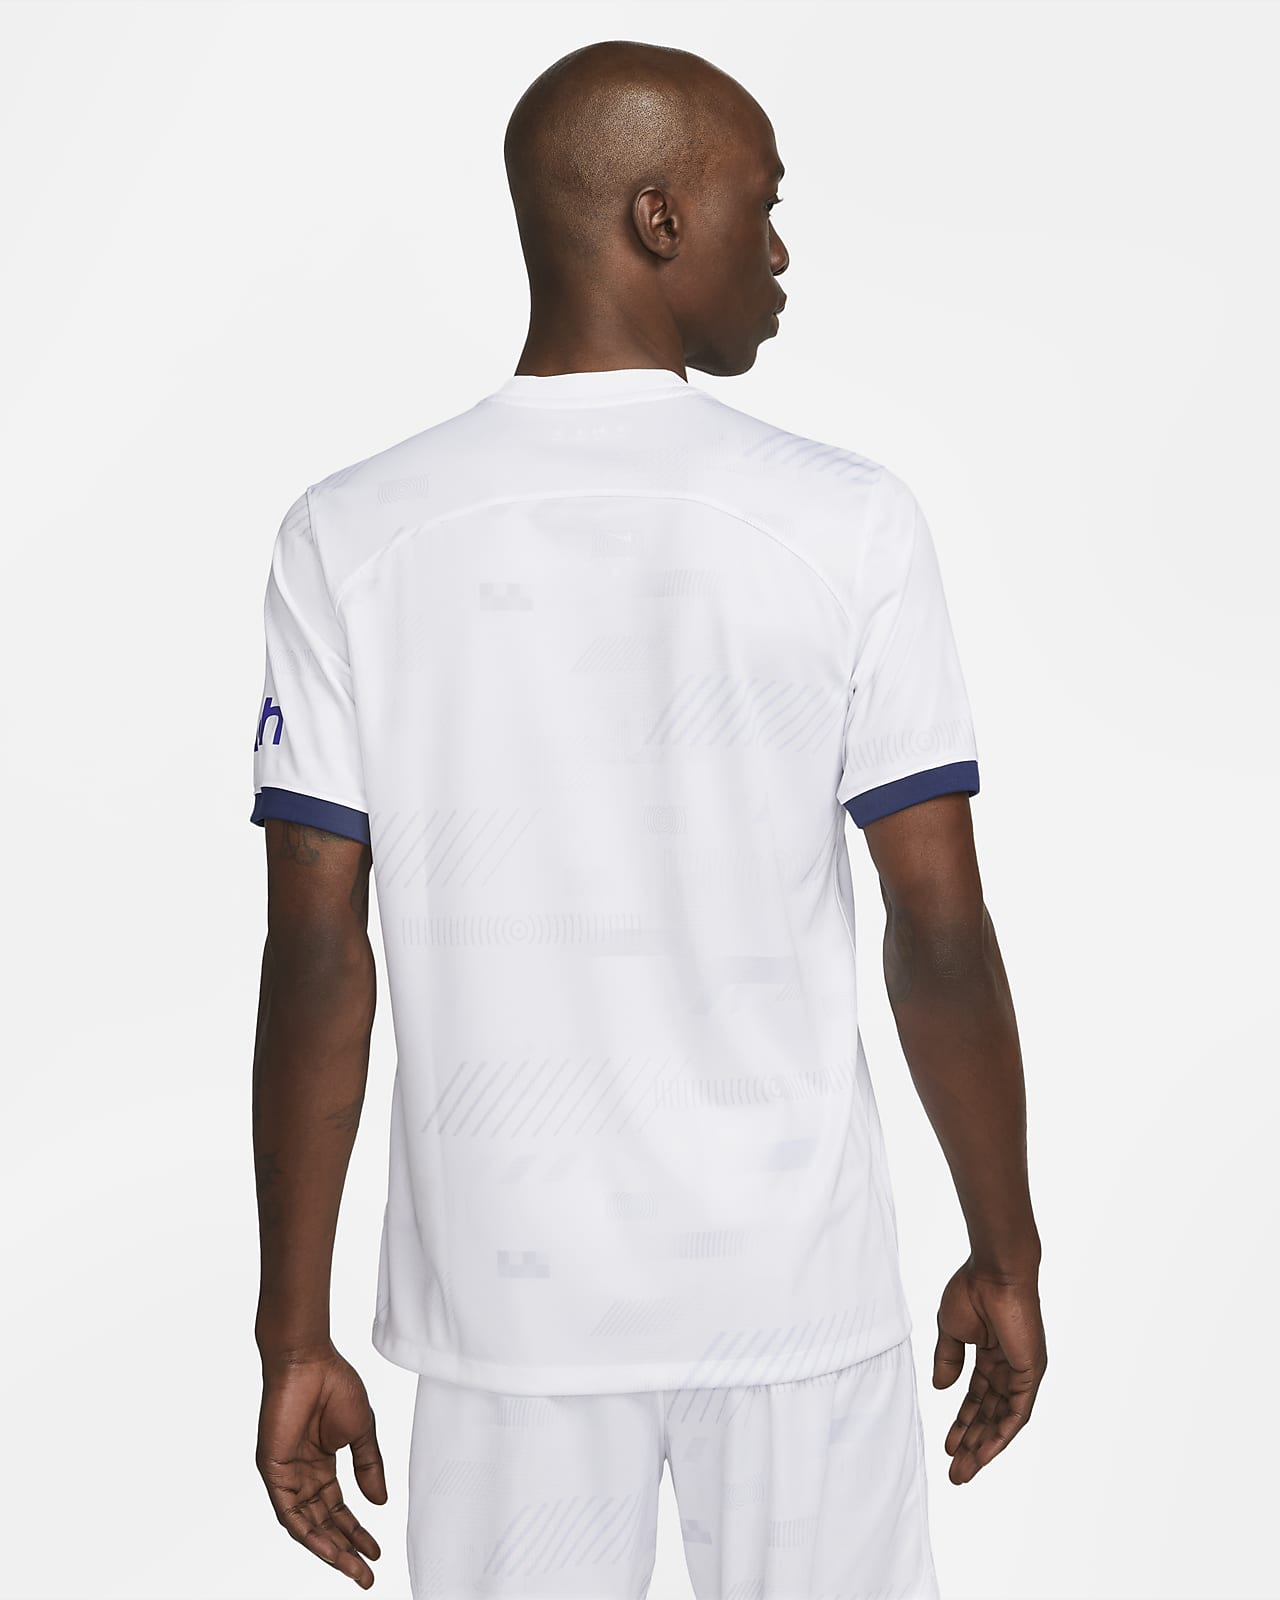 Tottenham Hotspur 2021-22 Nike Away Kit - Football Shirt Culture